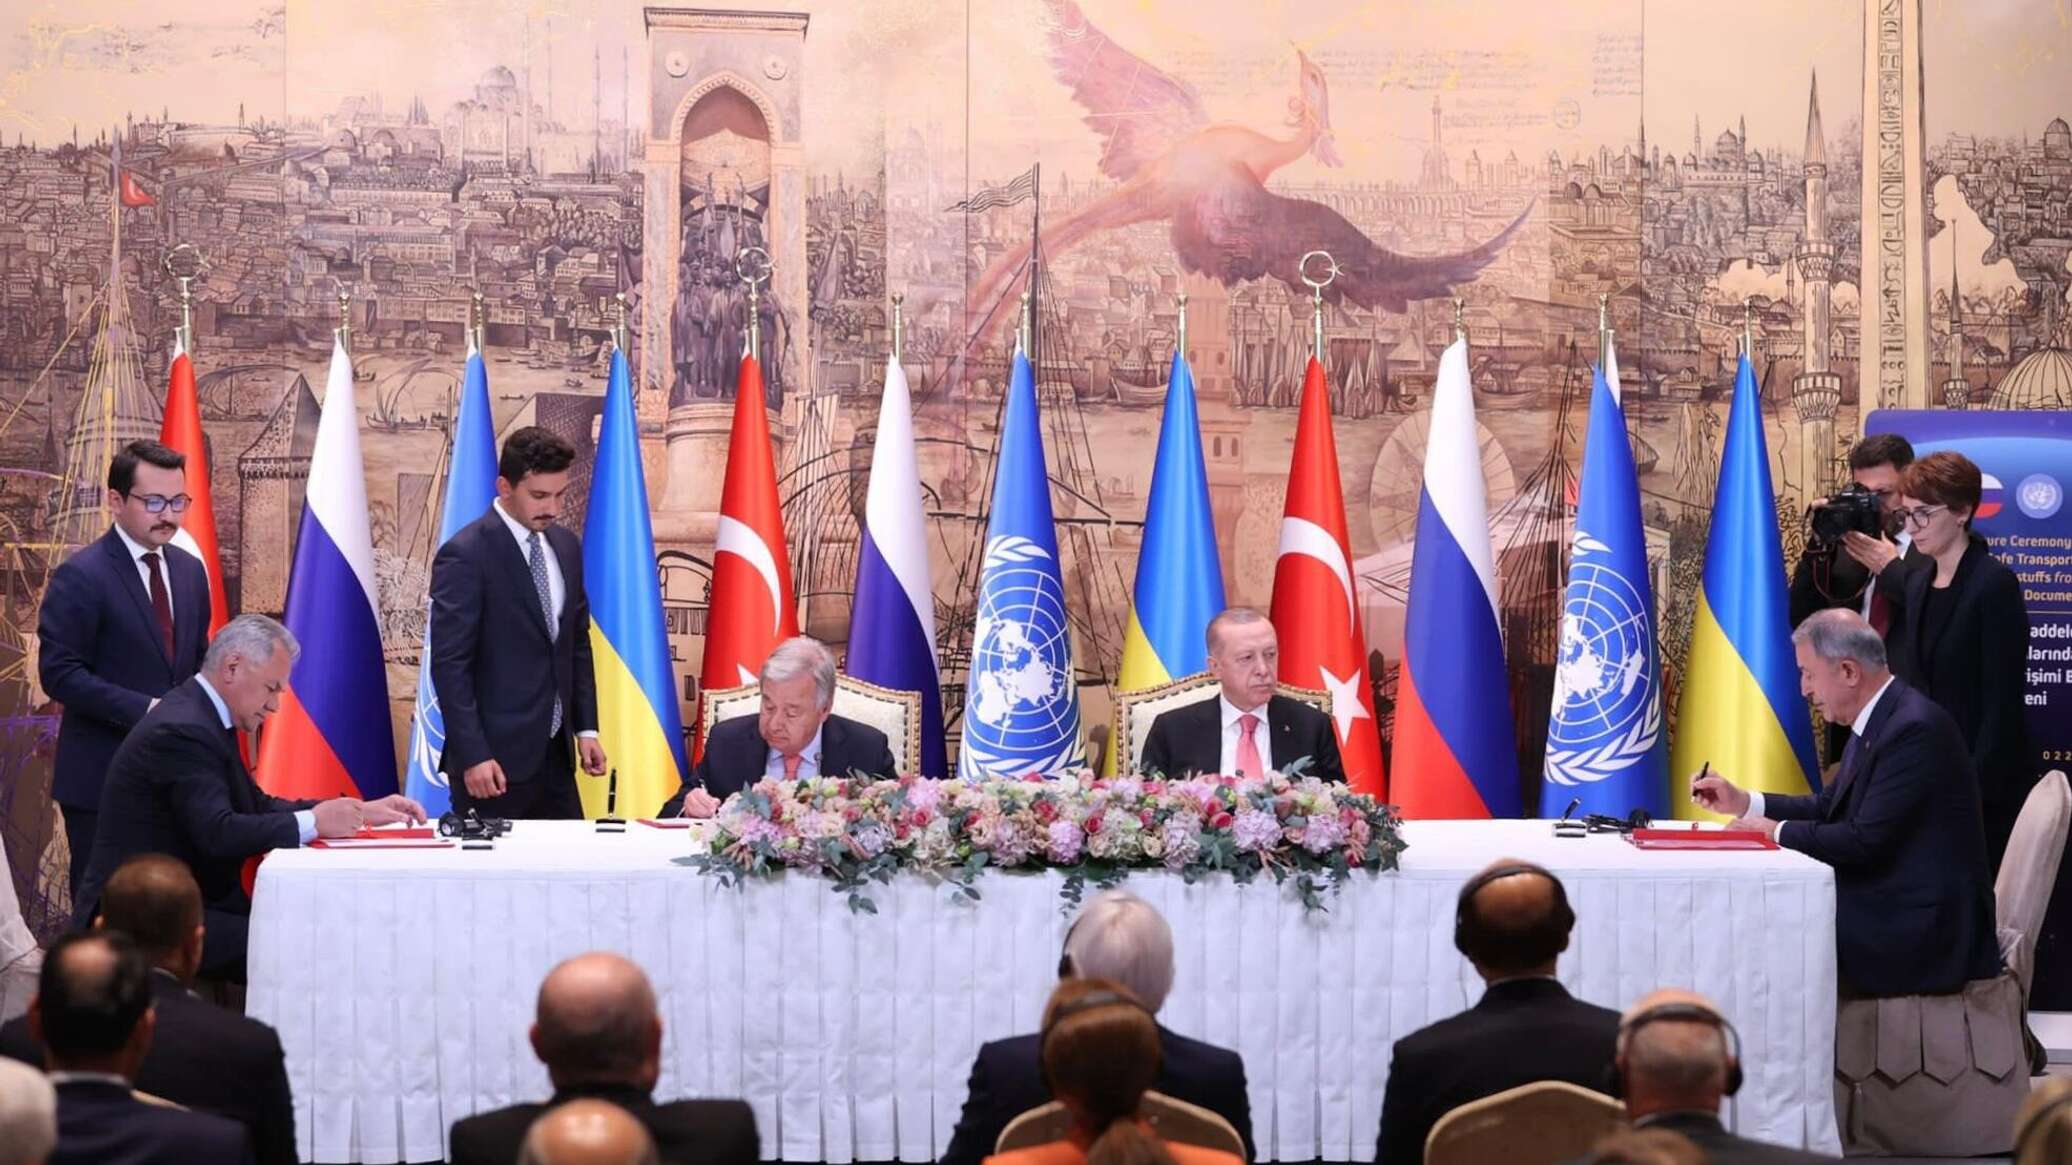 Стамбульский договор с украиной 2022 года. ООН Турция. Россия и ЕС. Переговоры в Стамбуле фото. Россия Турция Азербайджан.